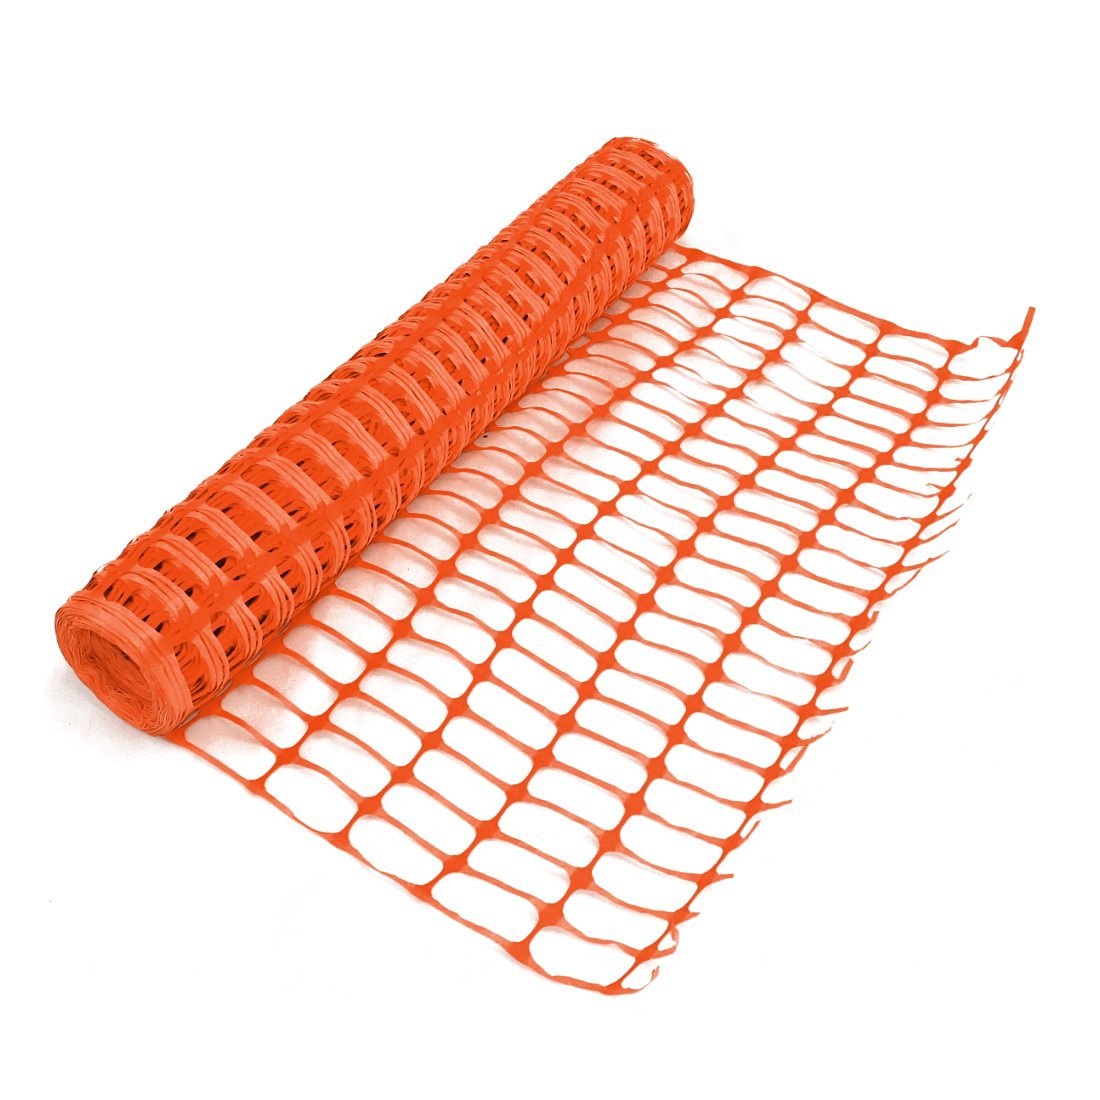 Heavy Duty Orange Safety Barrier Mesh Fencing 1mtr x 15mtr